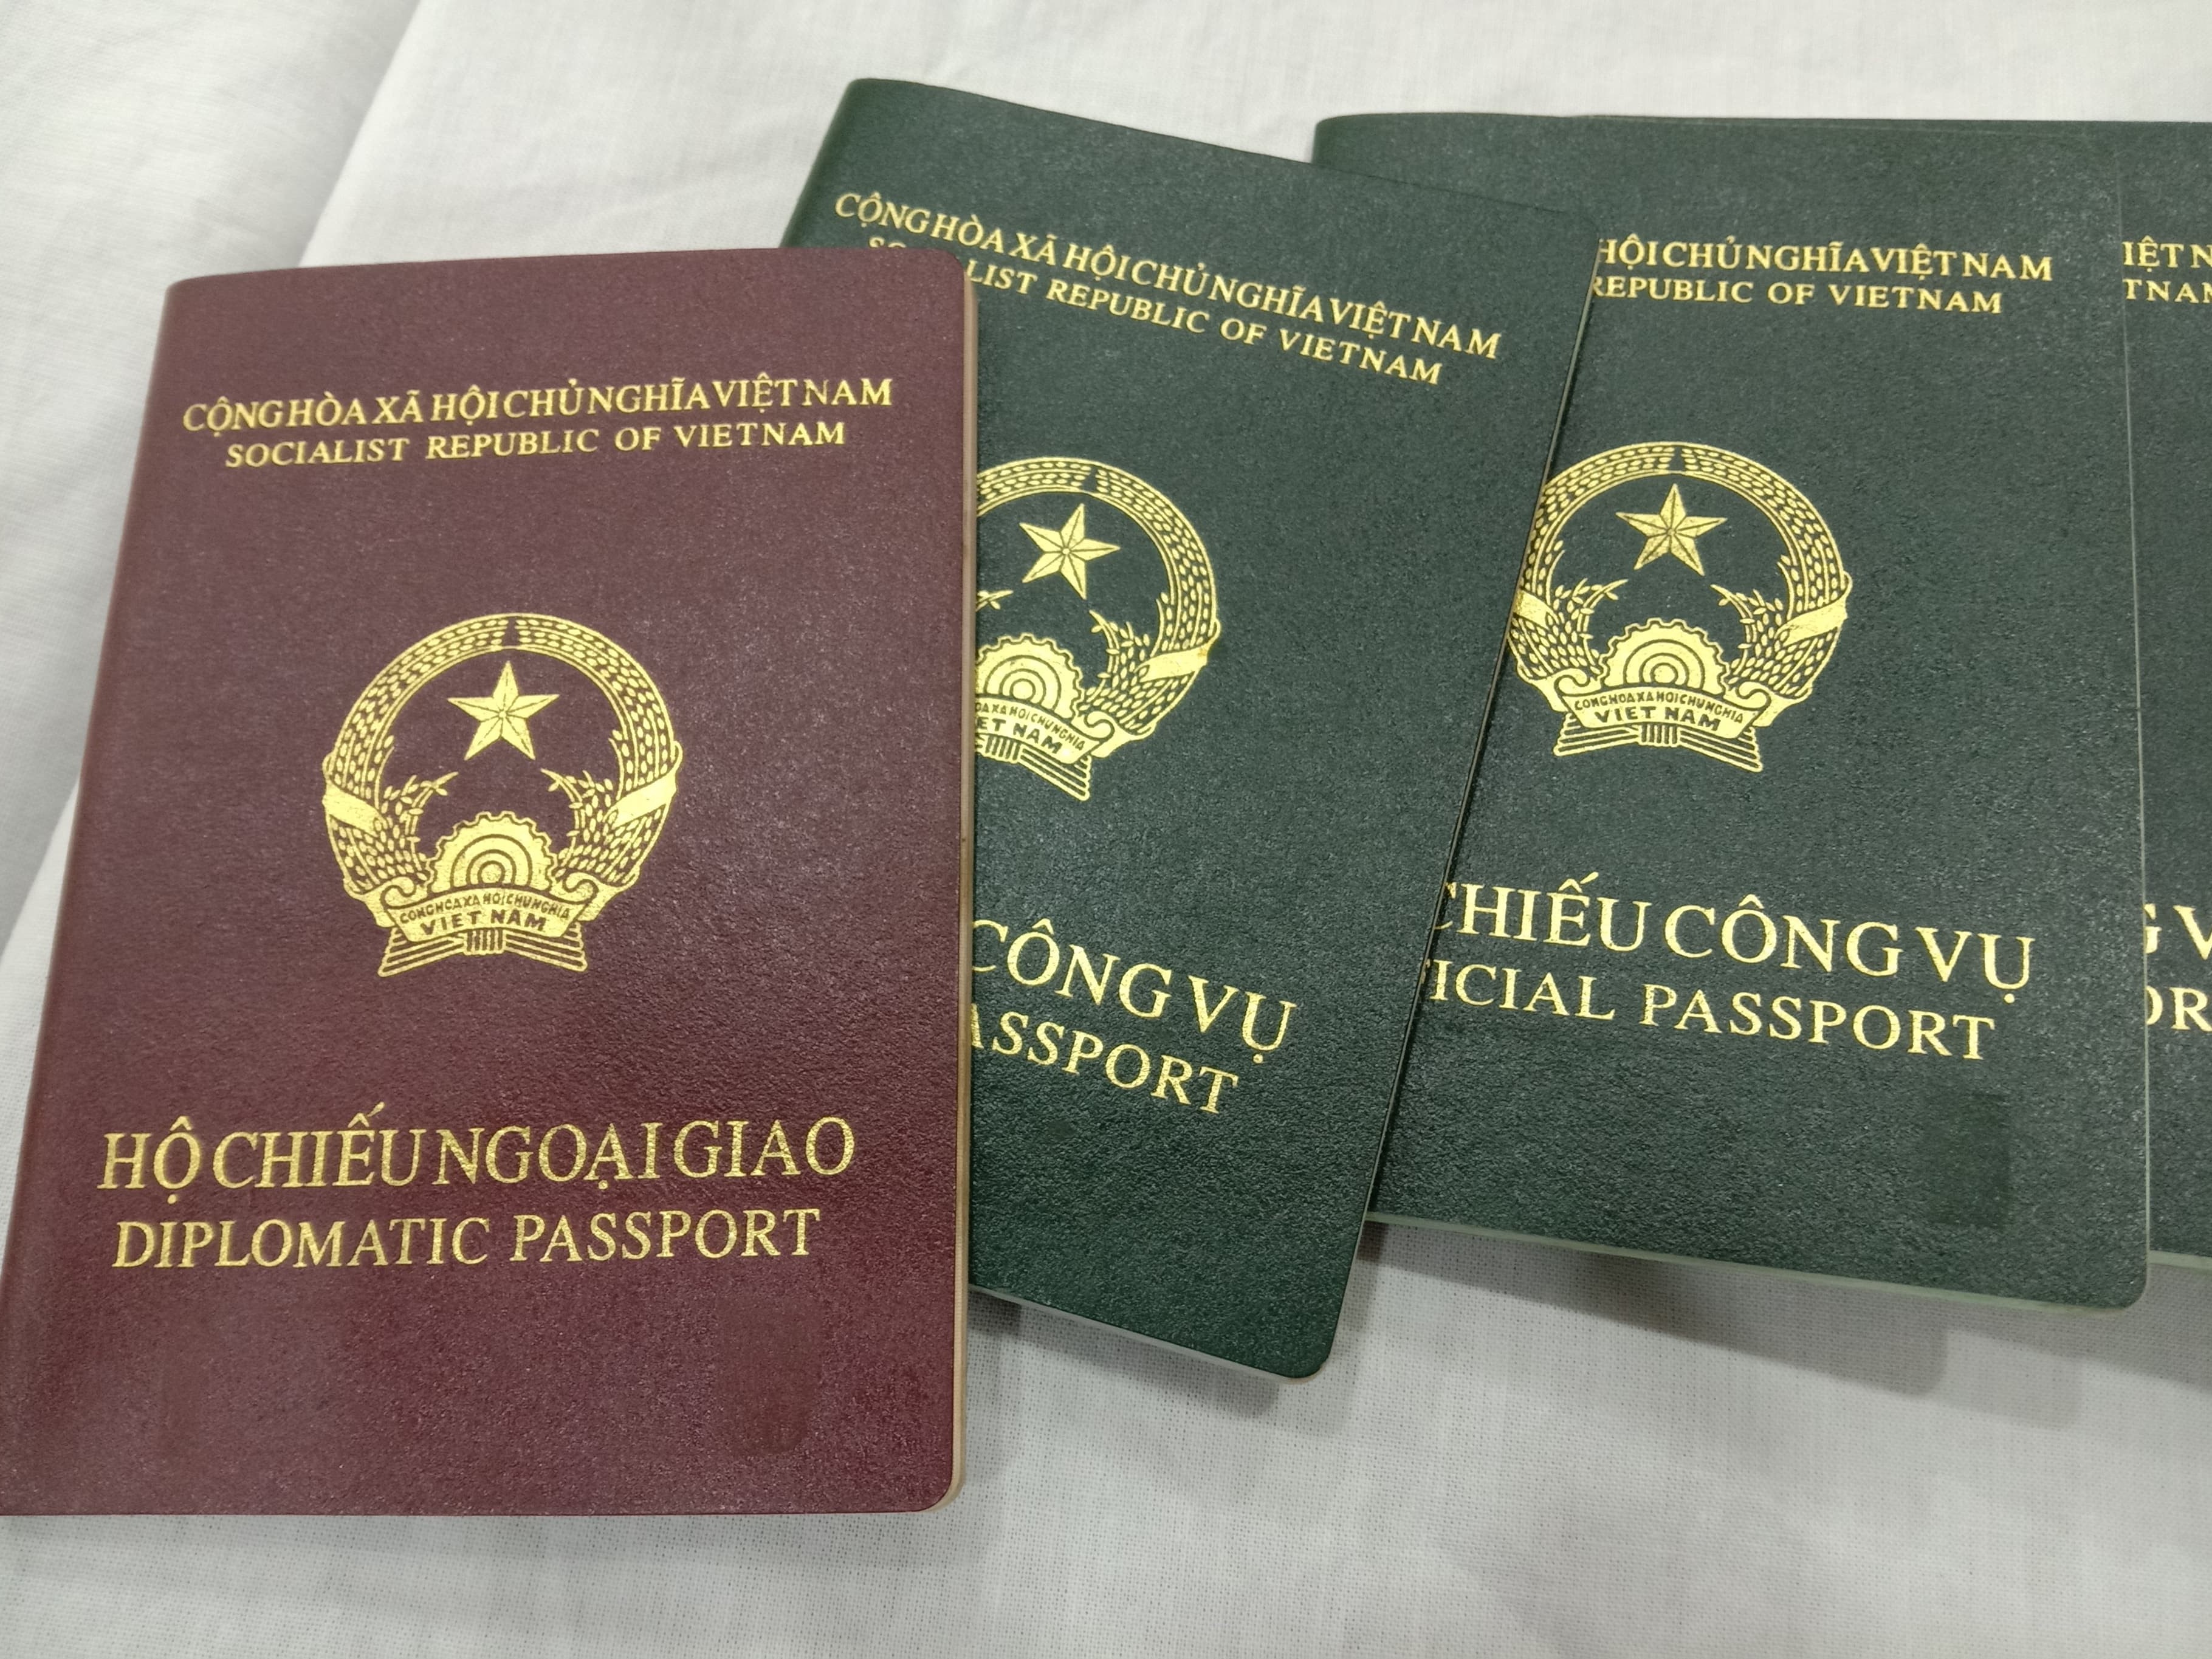 Tờ khai đề nghị cấp, gia hạn hộ chiếu ngoại giao, hộ chiếu công vụ